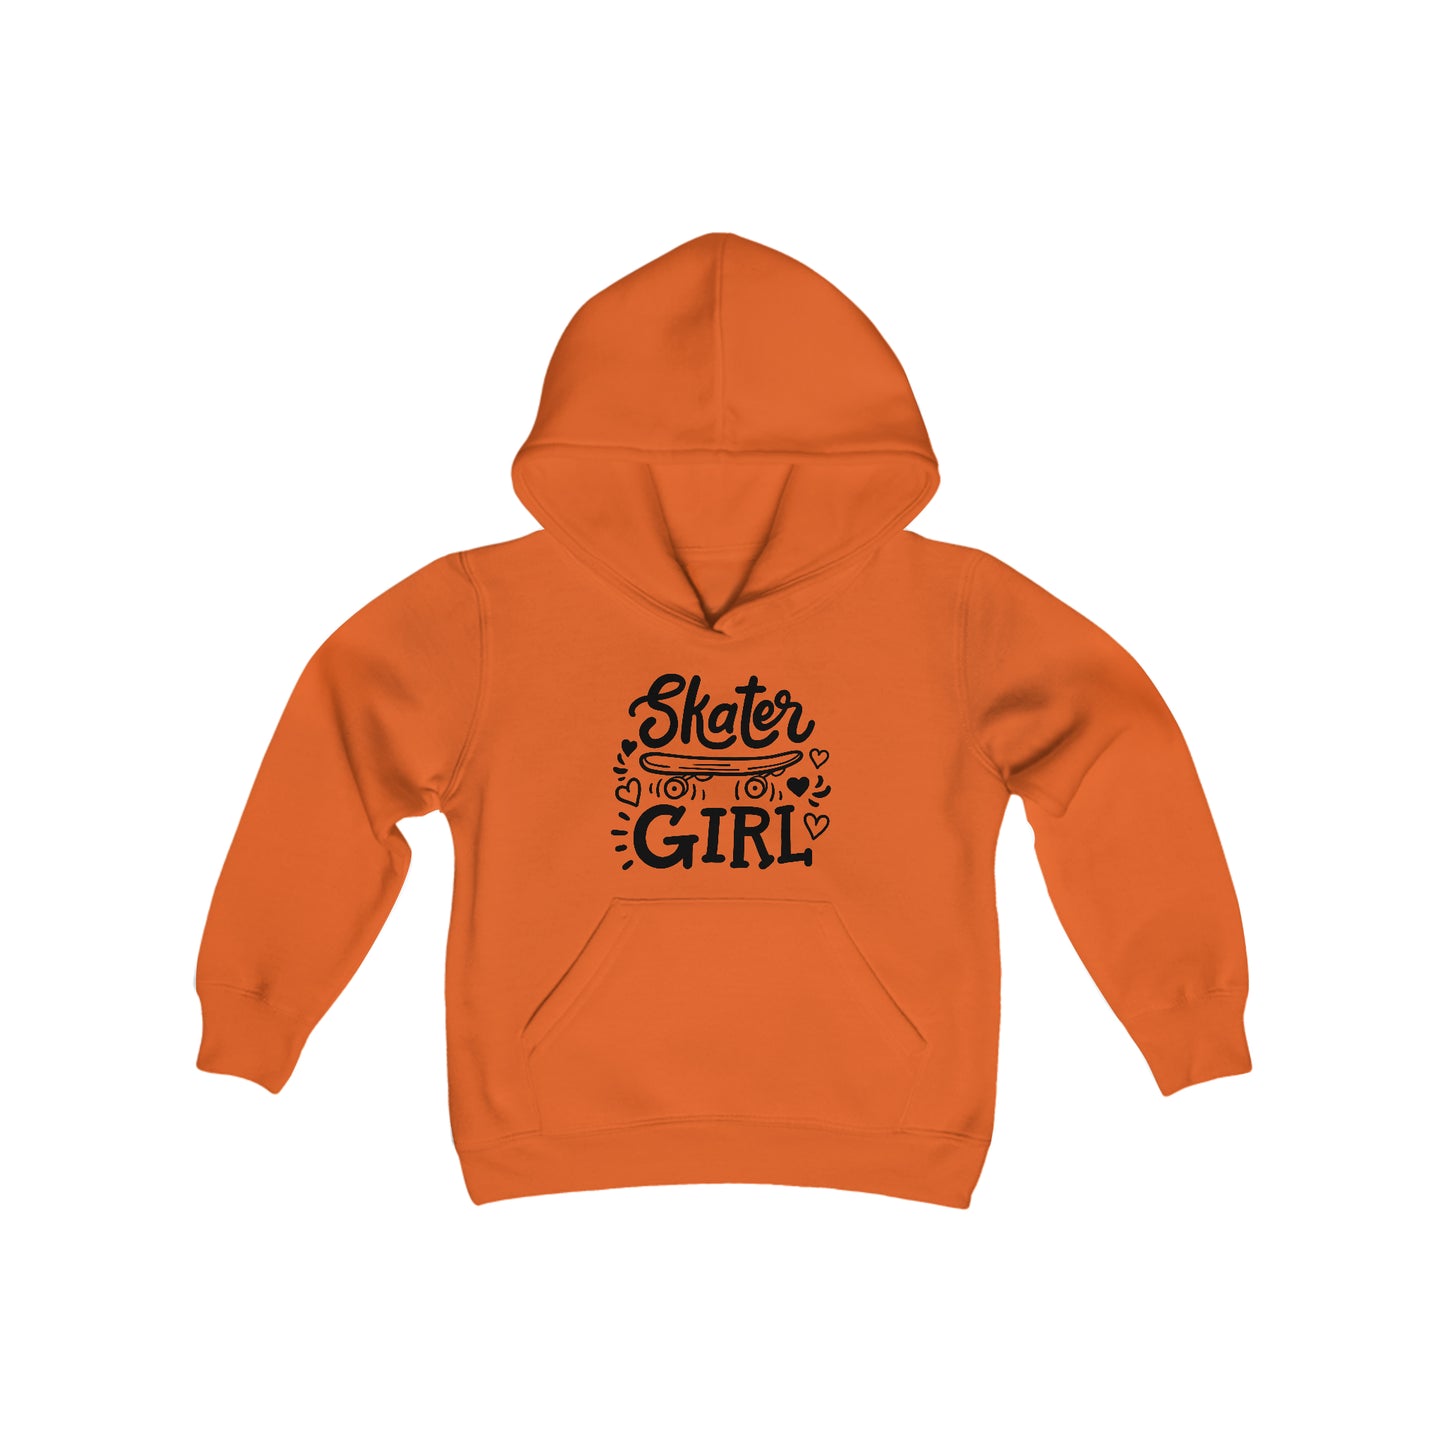 Skater Girl - Skateboard - Youth Heavy Blend Hooded Sweatshirt